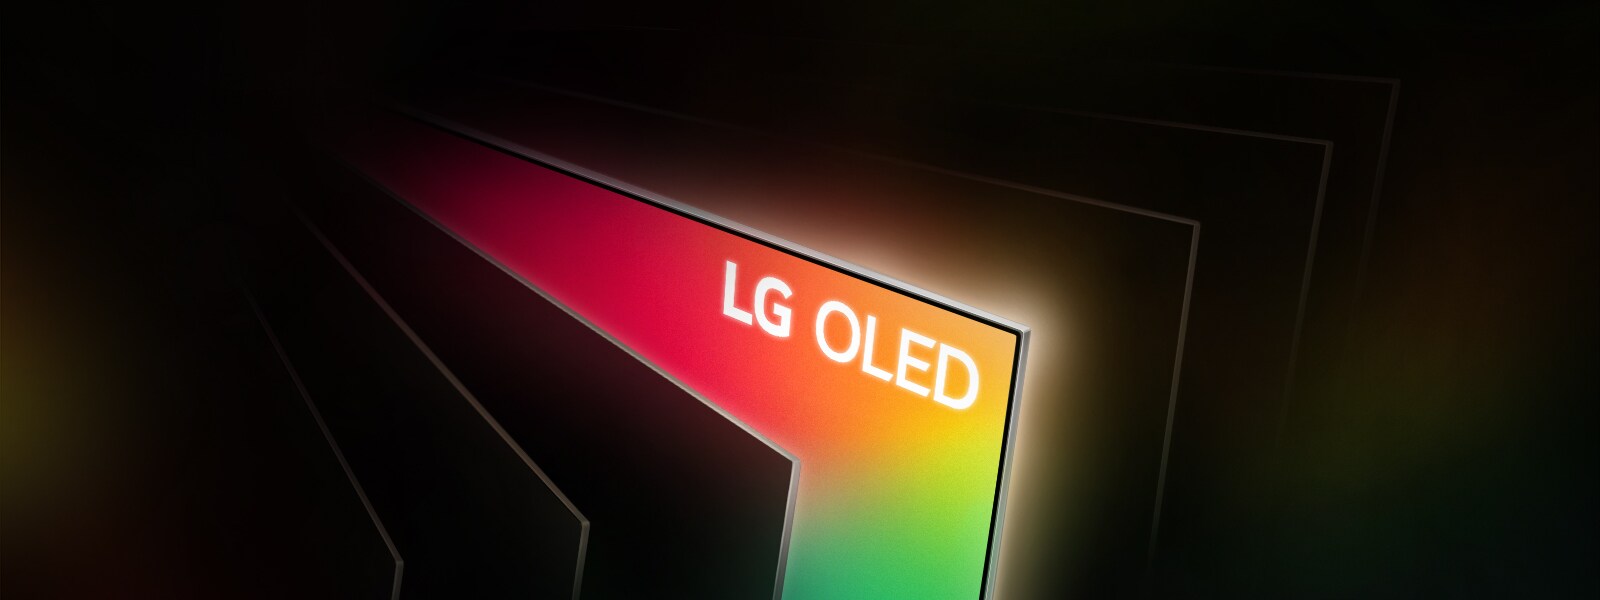 为什么LG OLED如此令人惊叹?1